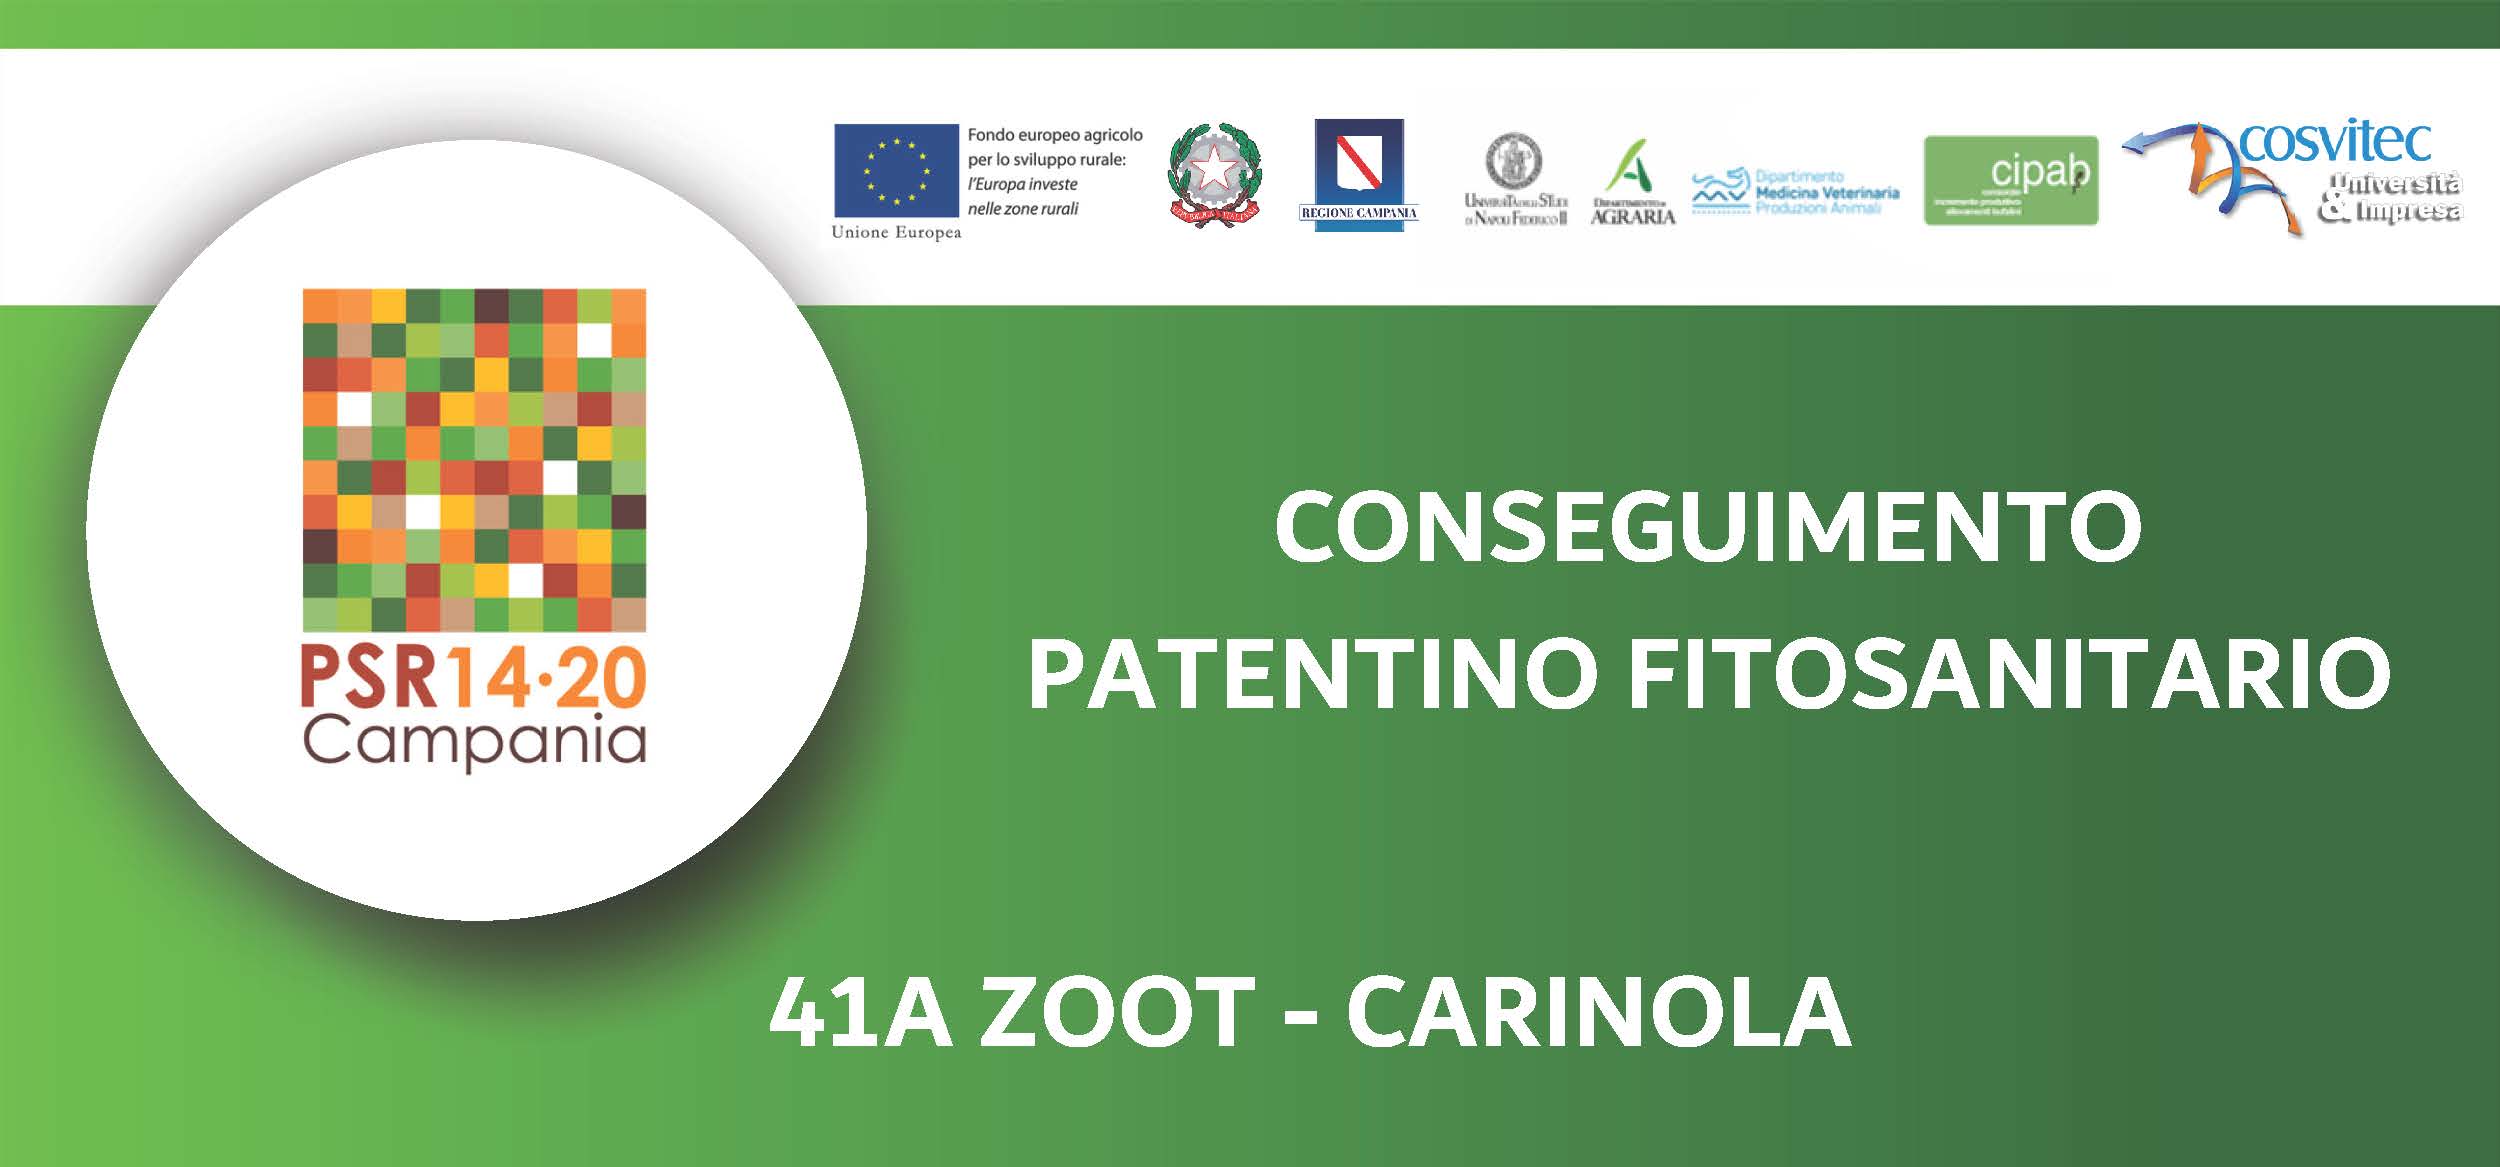 Conseguimento patentino fitosanitario 41A Carinola